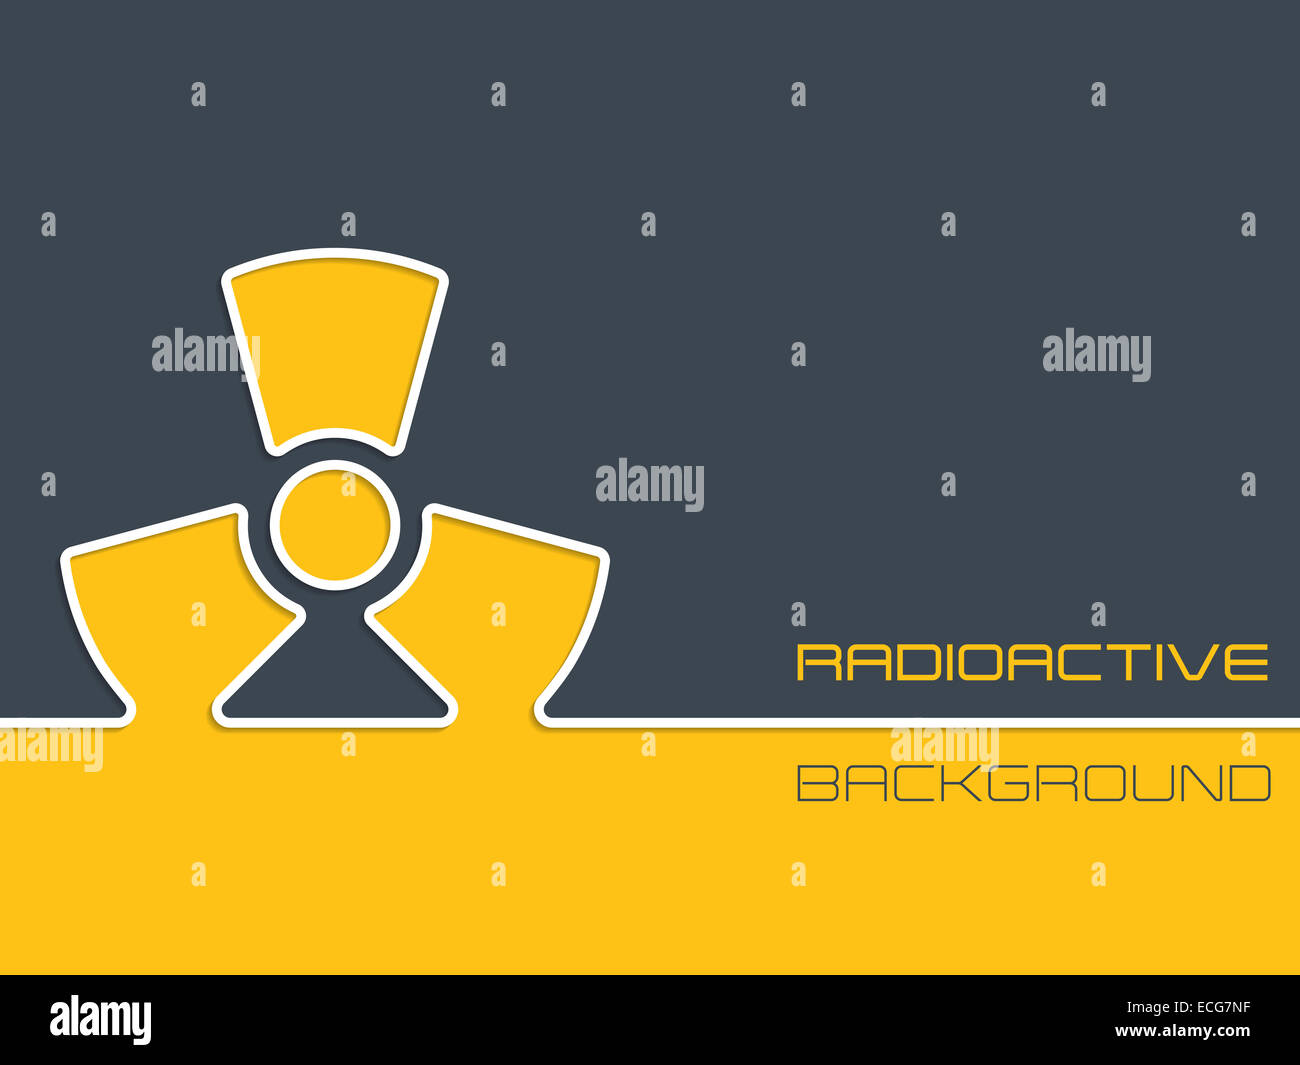 Semplice avvertimento radioattivi design di sfondo con colore arancione e grigio Foto Stock